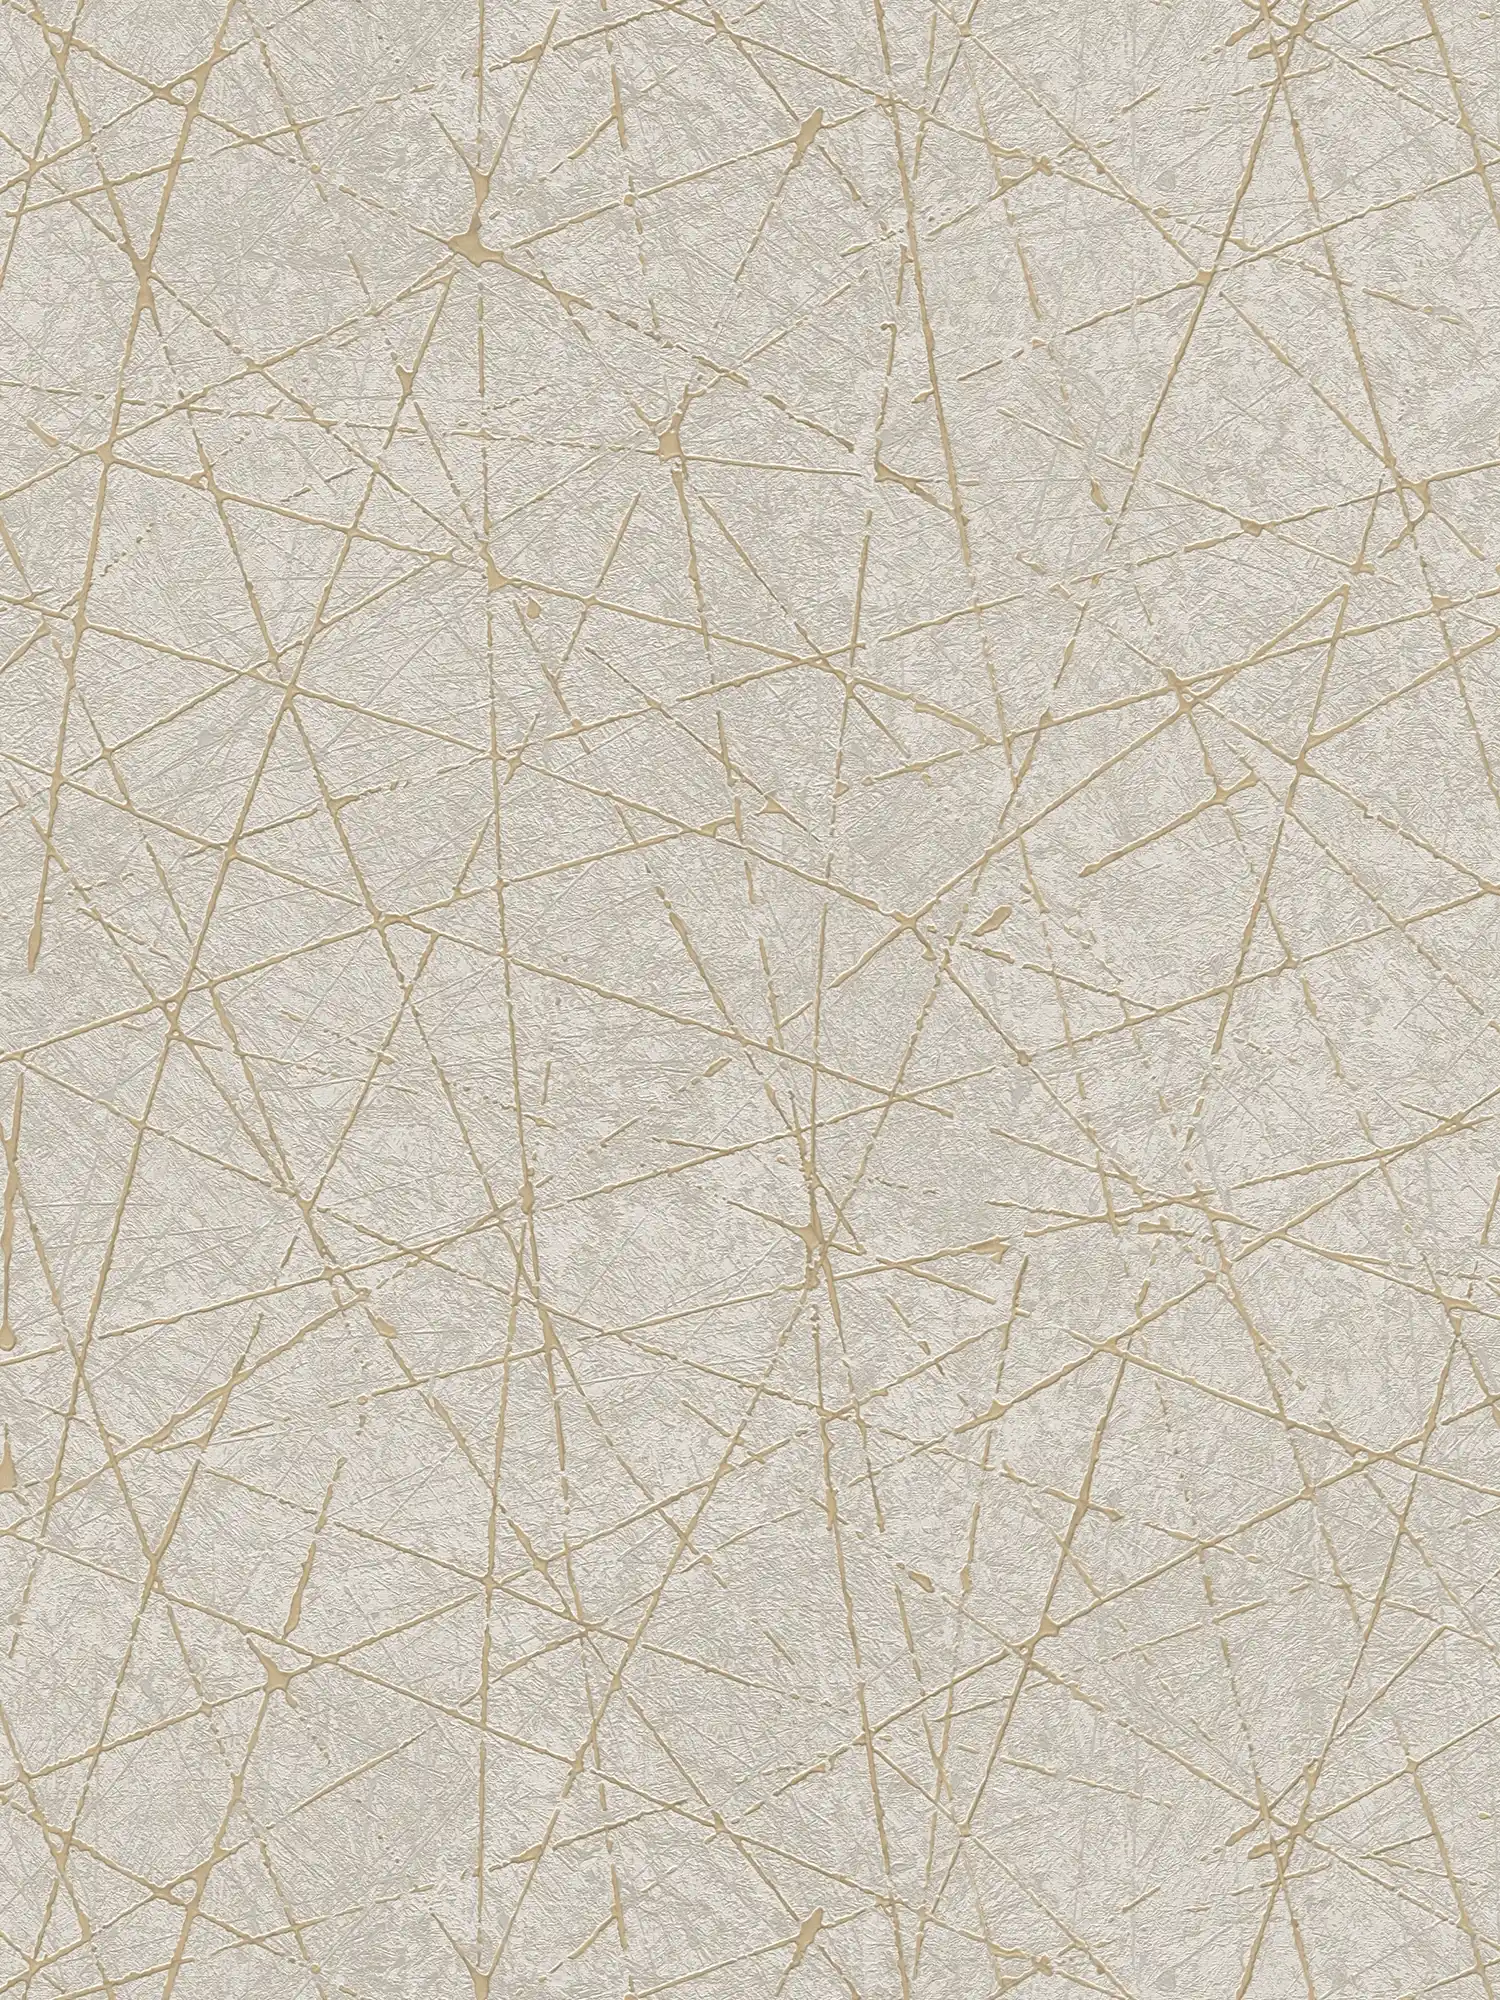 Vliestapete mit grafischen Linien & Metalliceffekt – Creme, Grau, Gold
